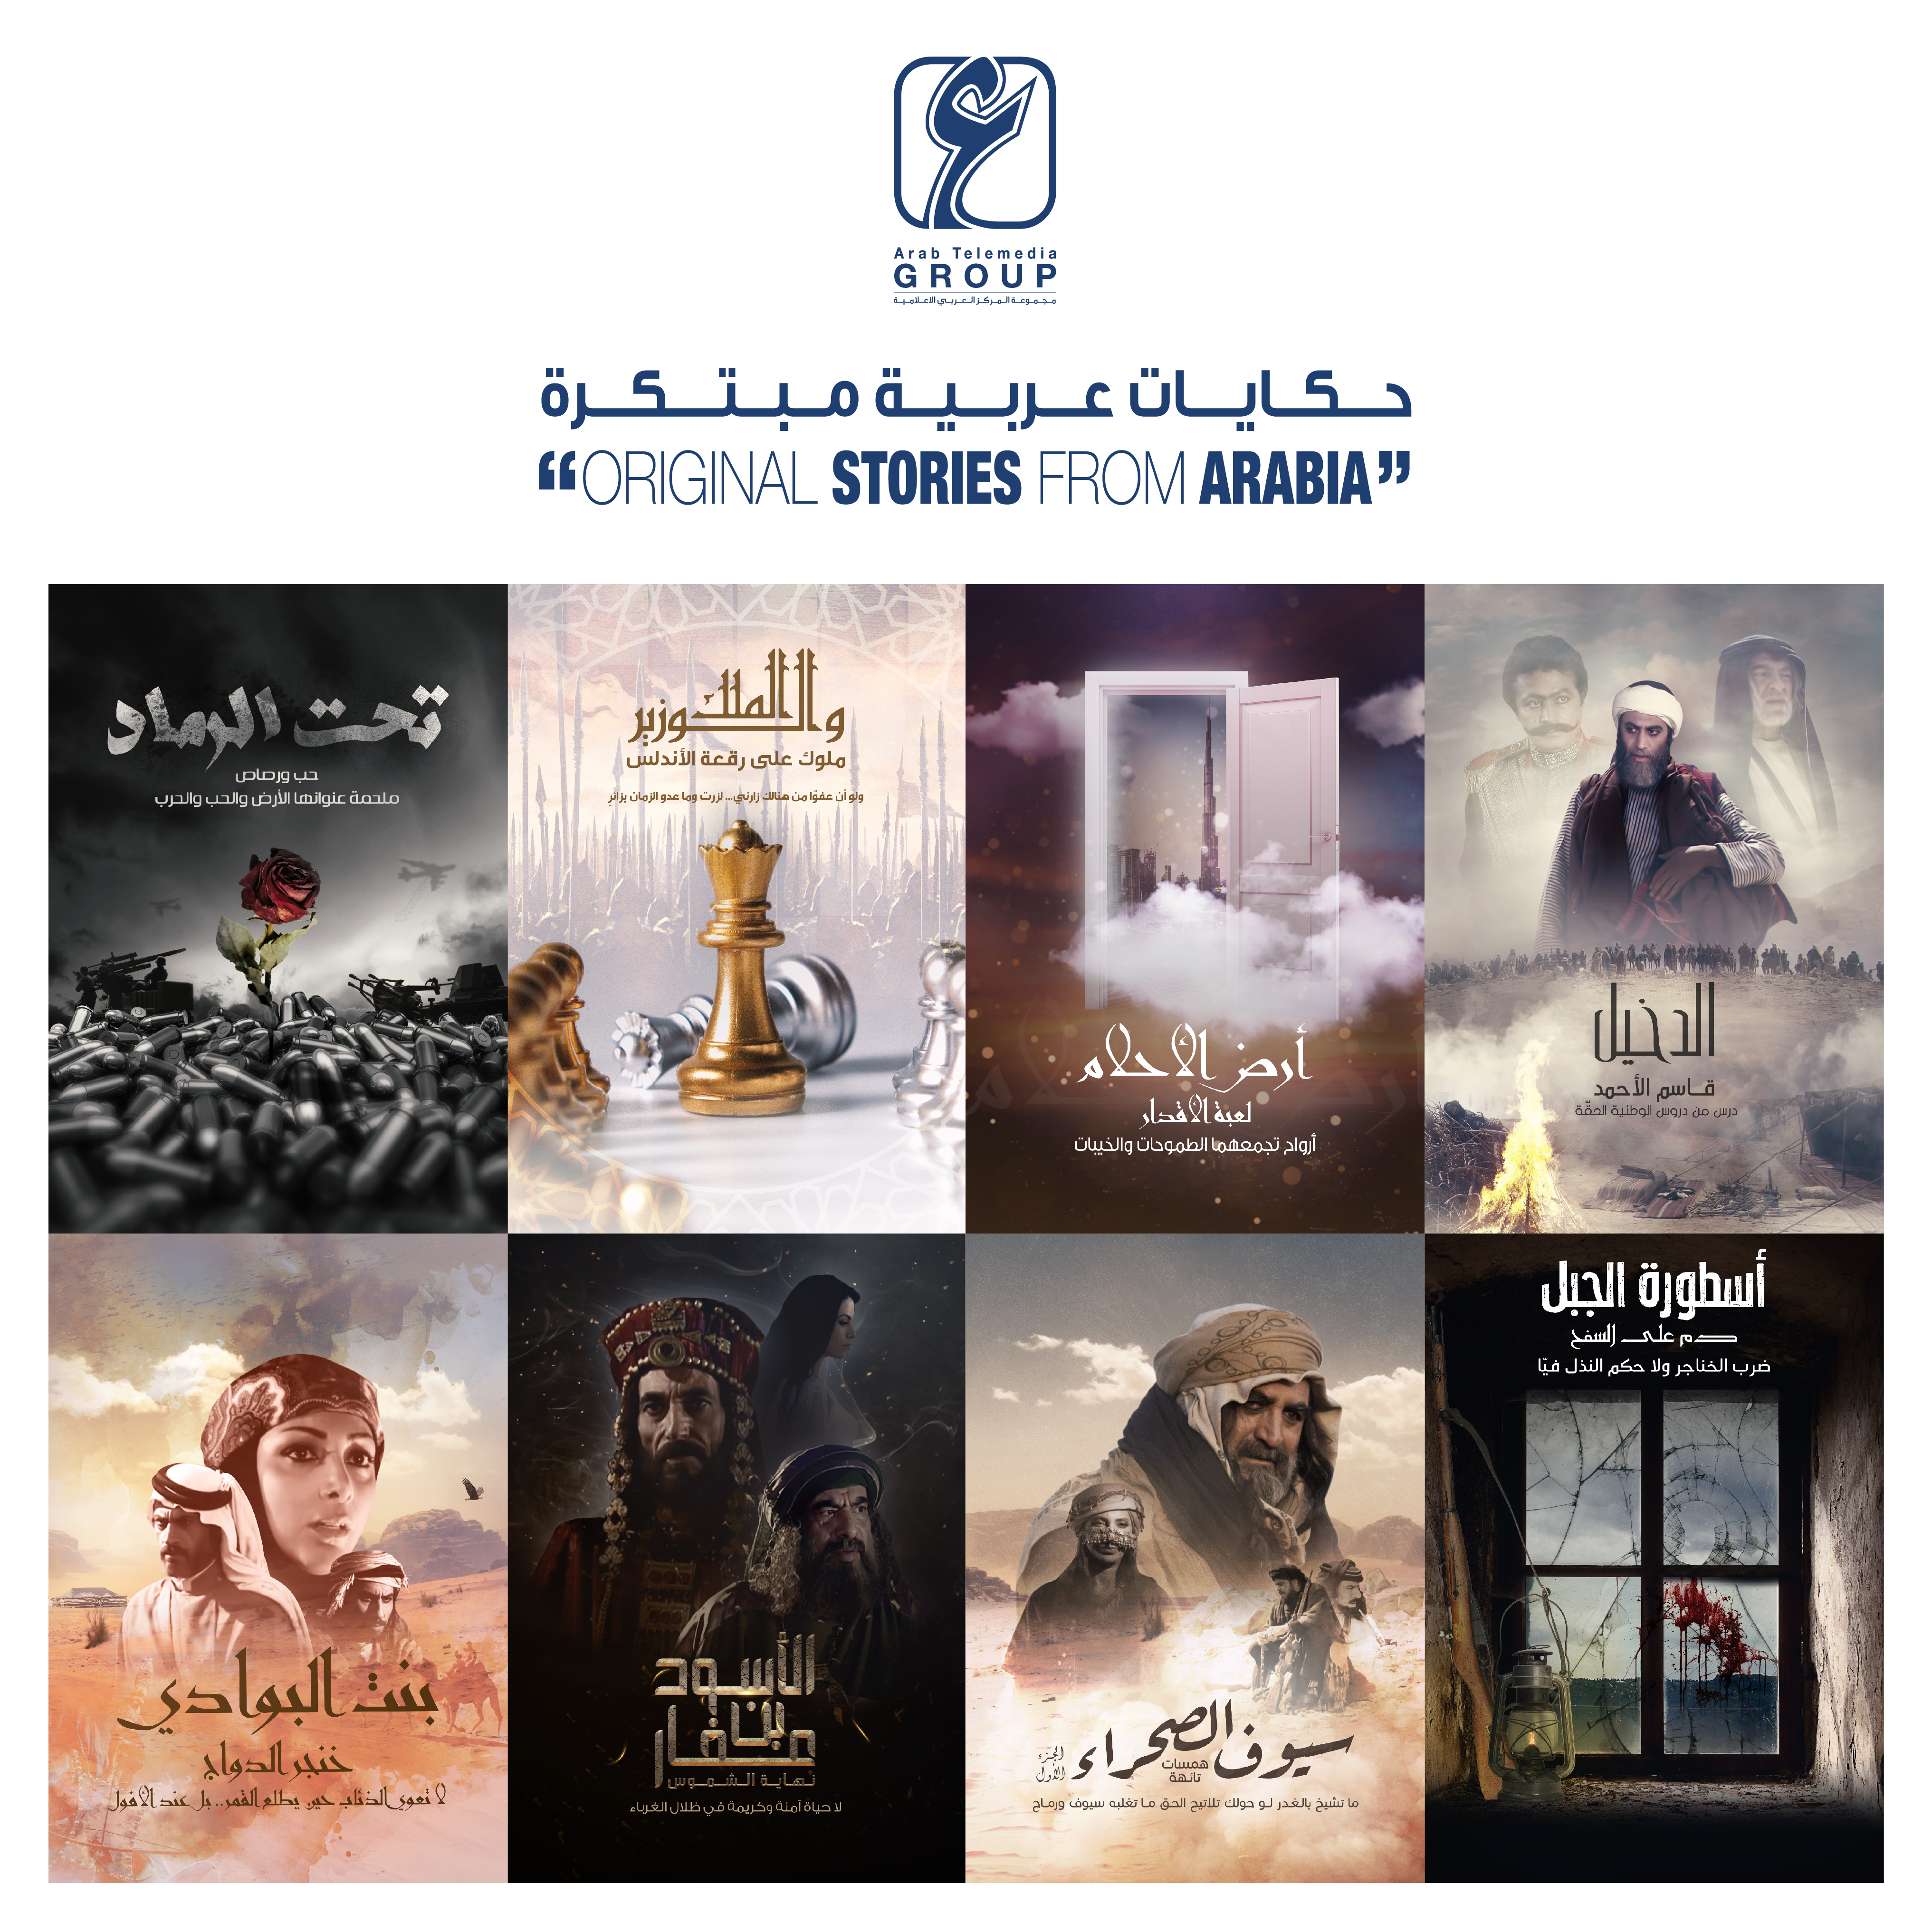  أفلام عالية الجودة تنتجها مجموعة المركز العربي الإعلامية